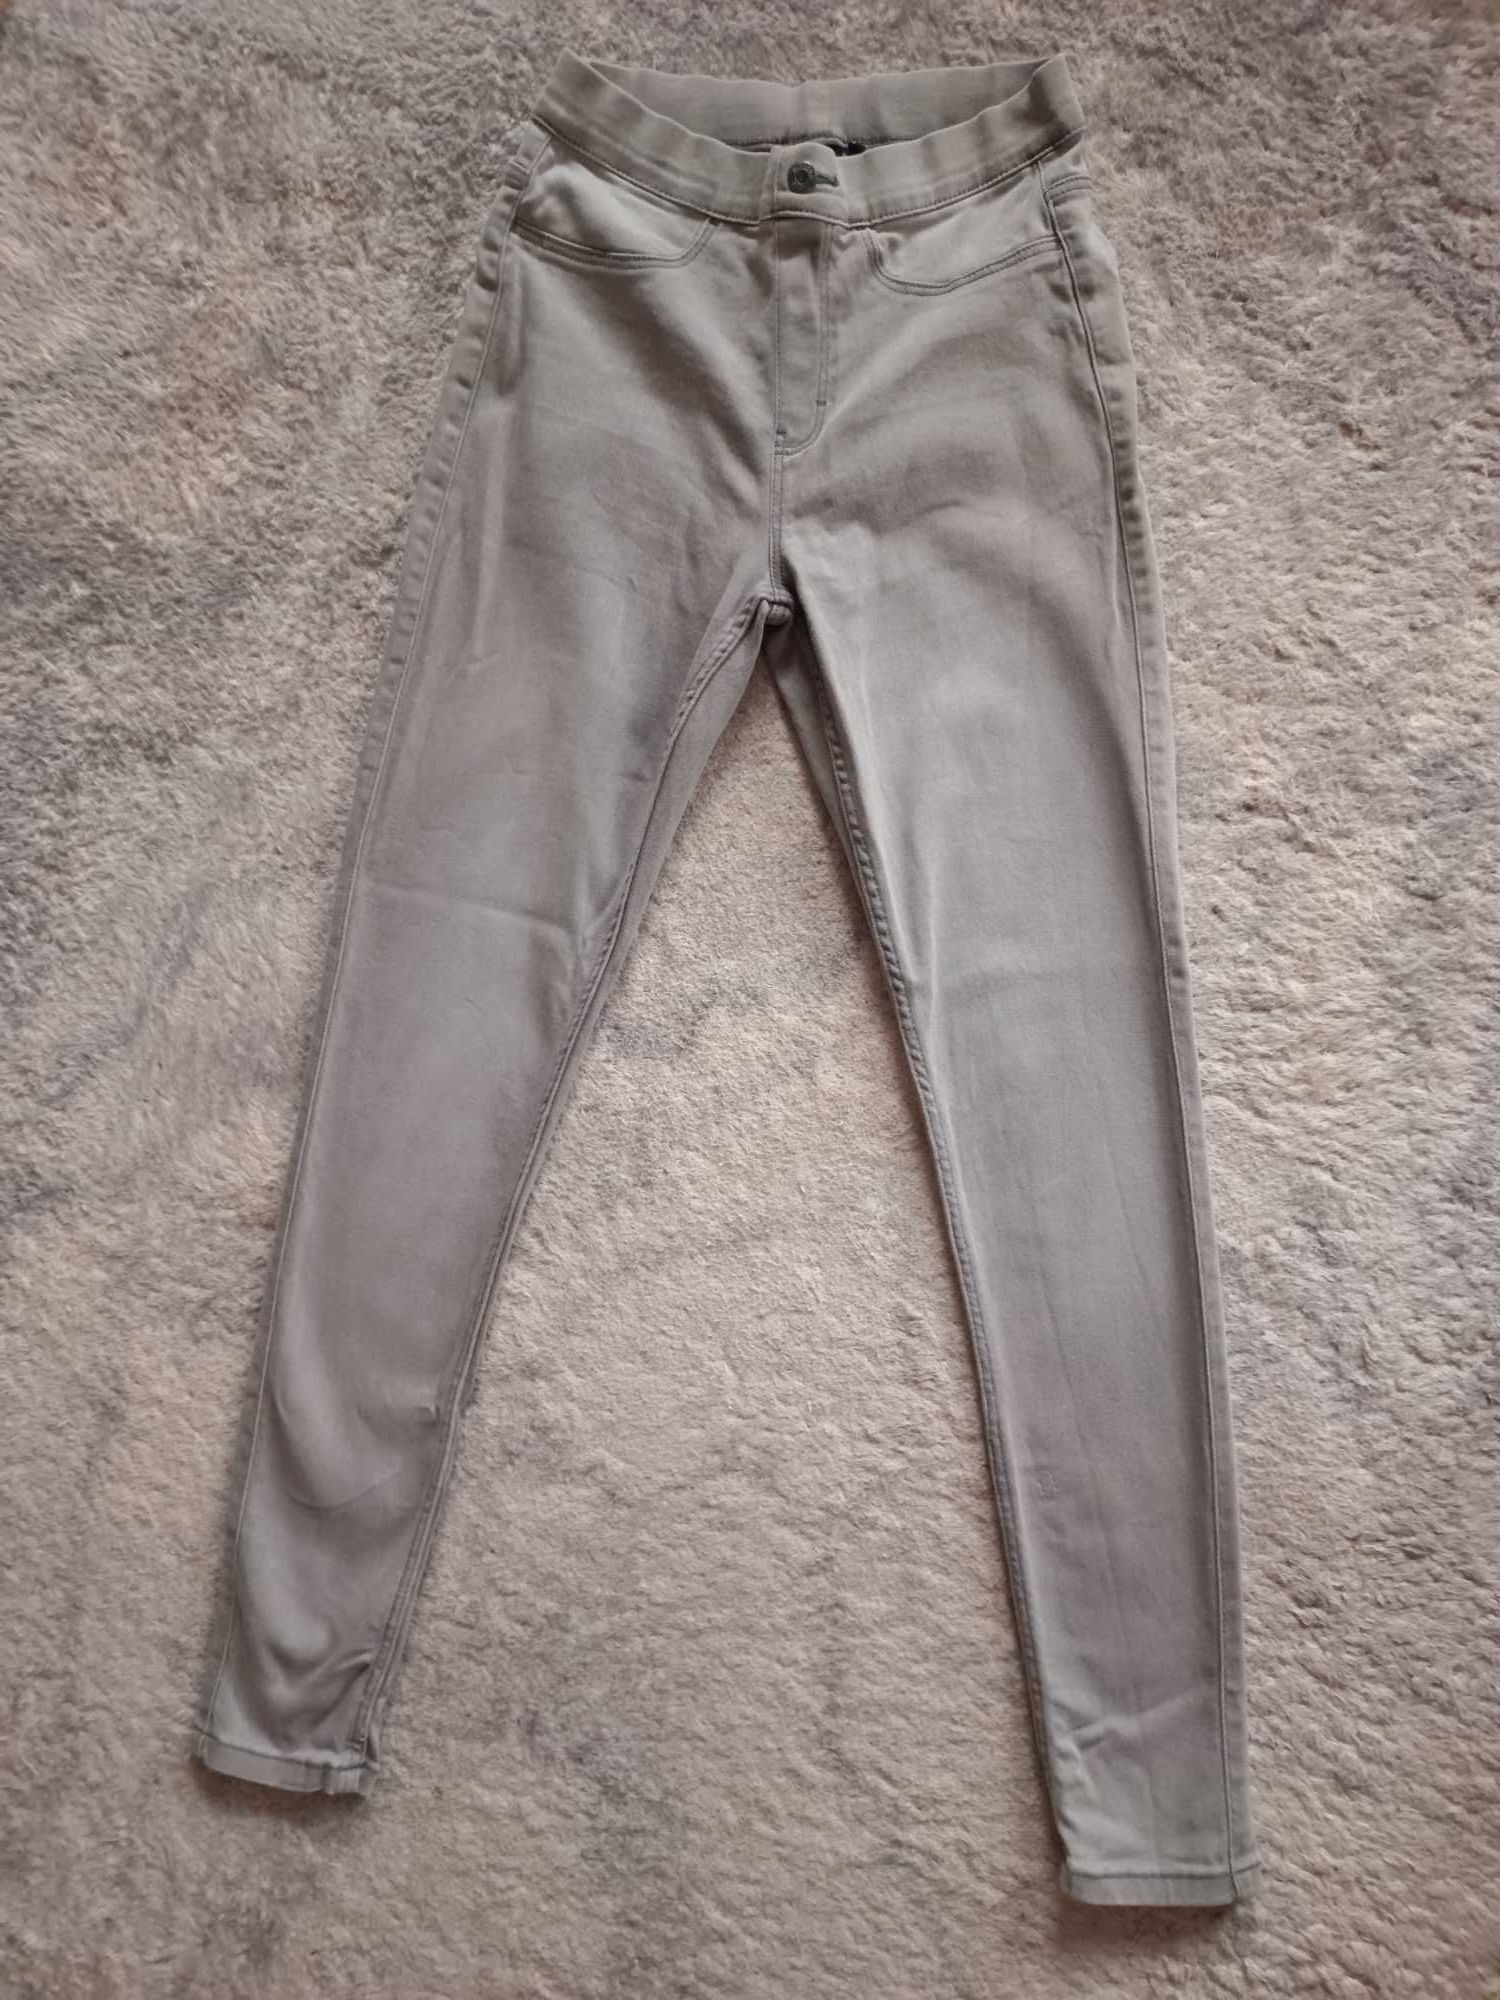 Jegginsy szare Esmara 36,s miękki jeans, dopasowują się do figury